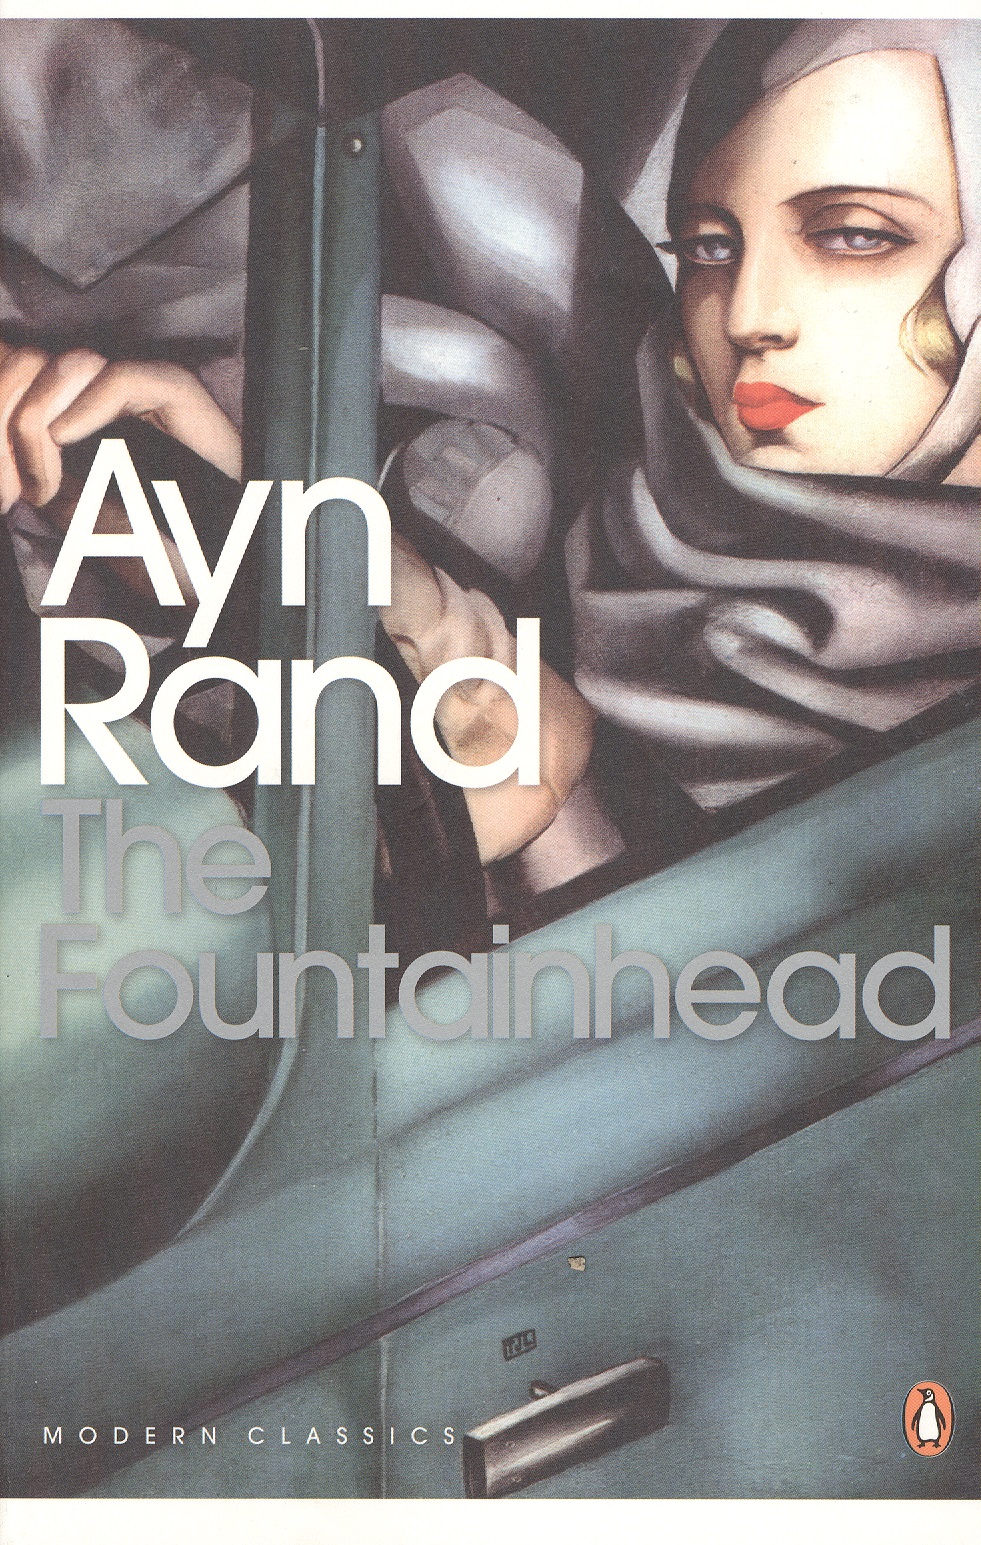 

The Fountainhead